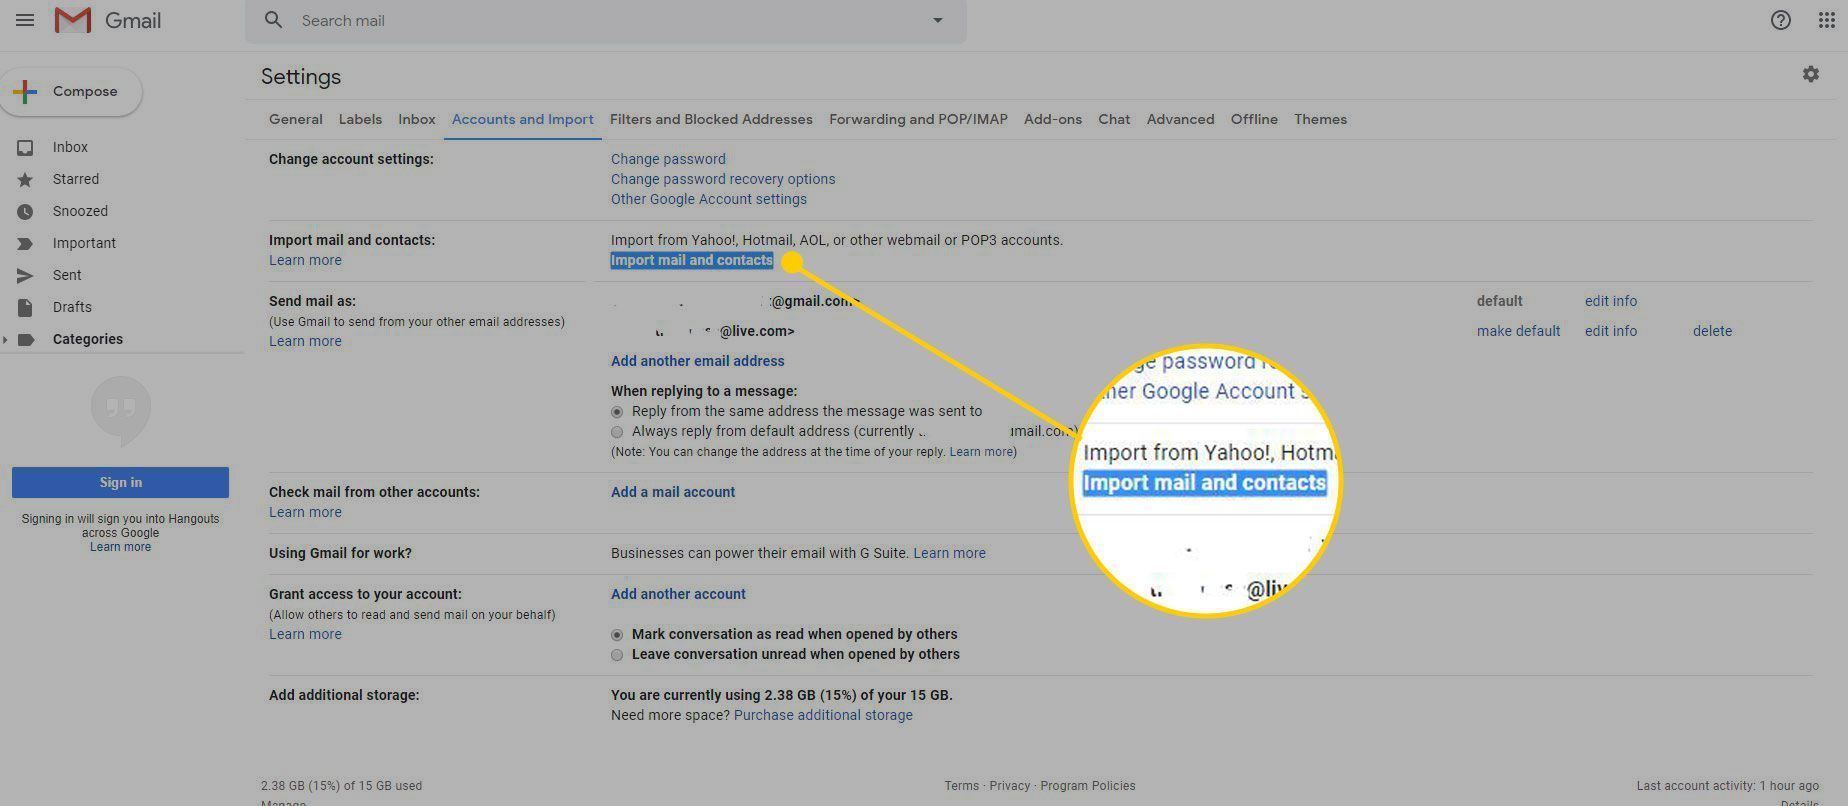 Вкладка «Аккаунты и импорт» в настройках Gmail с выделенной кнопкой «Импорт почты и контактов»